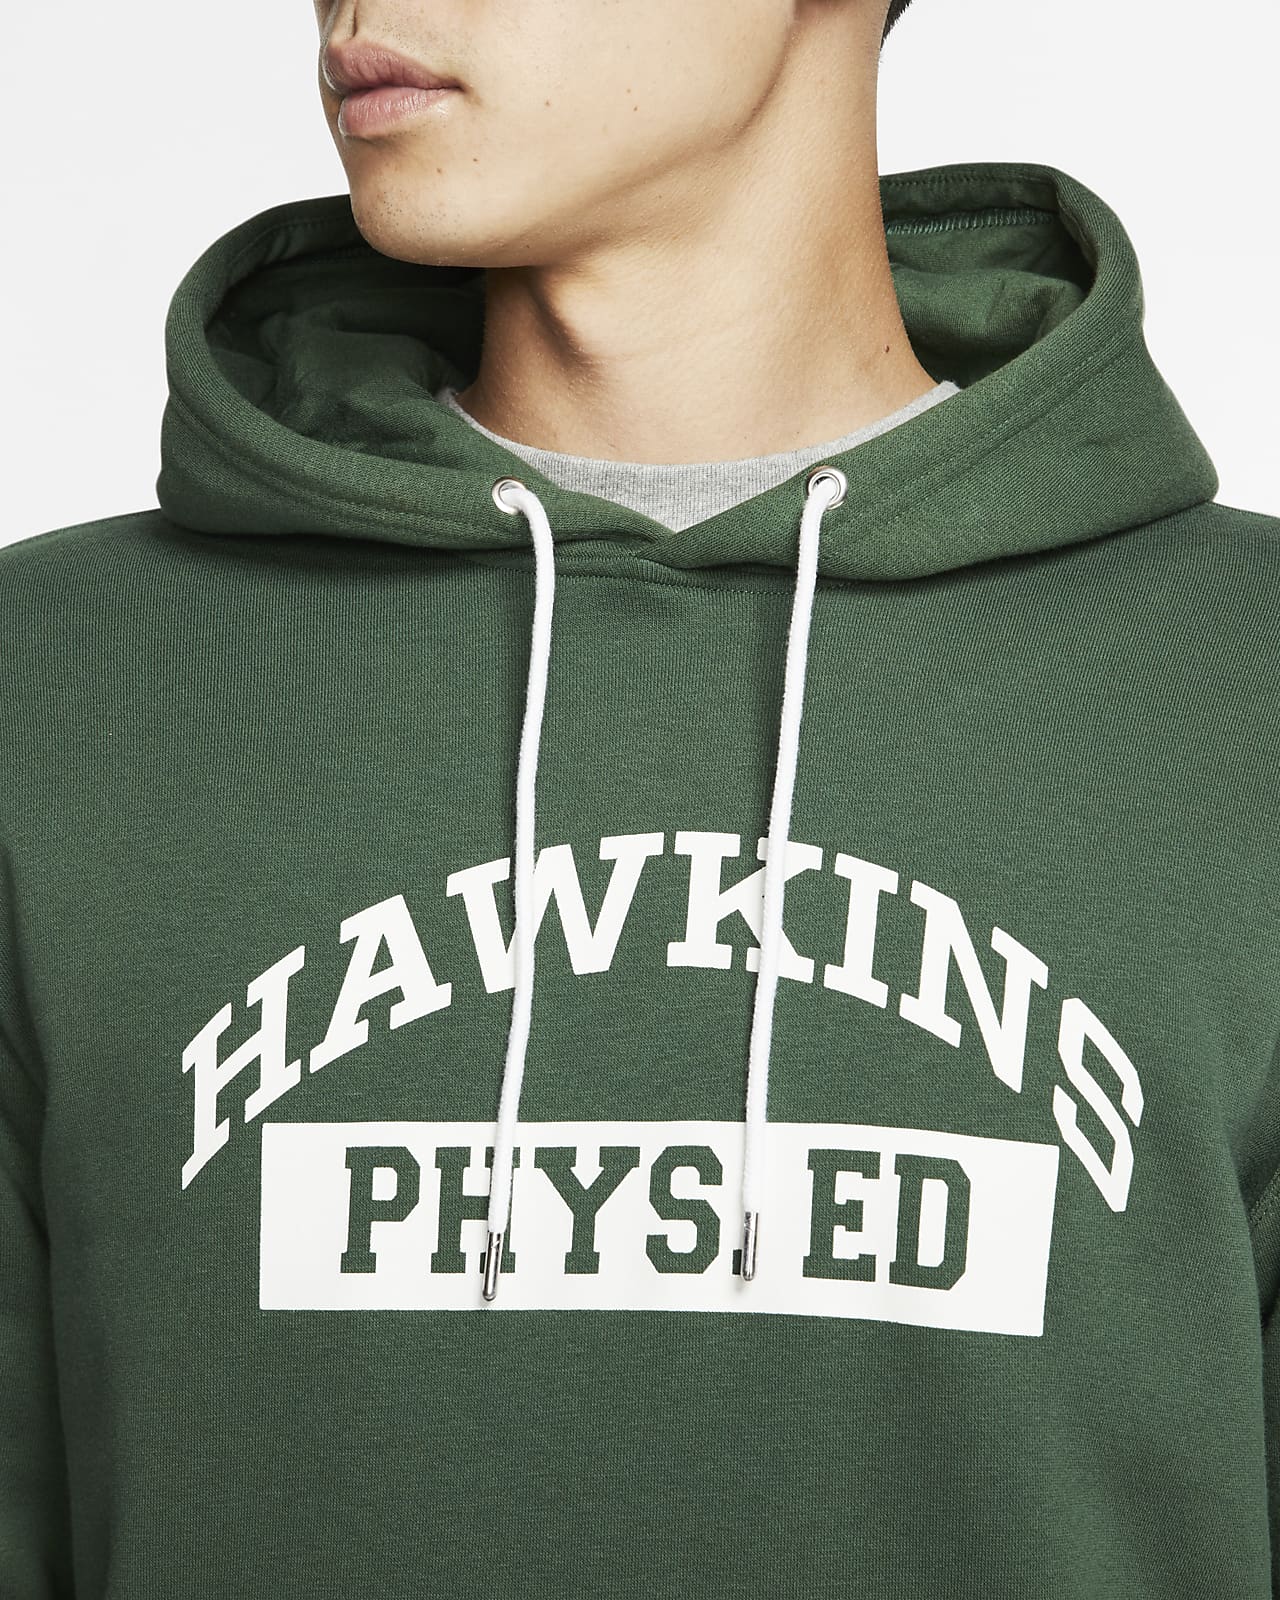 hawkins phys ed hoodie nike